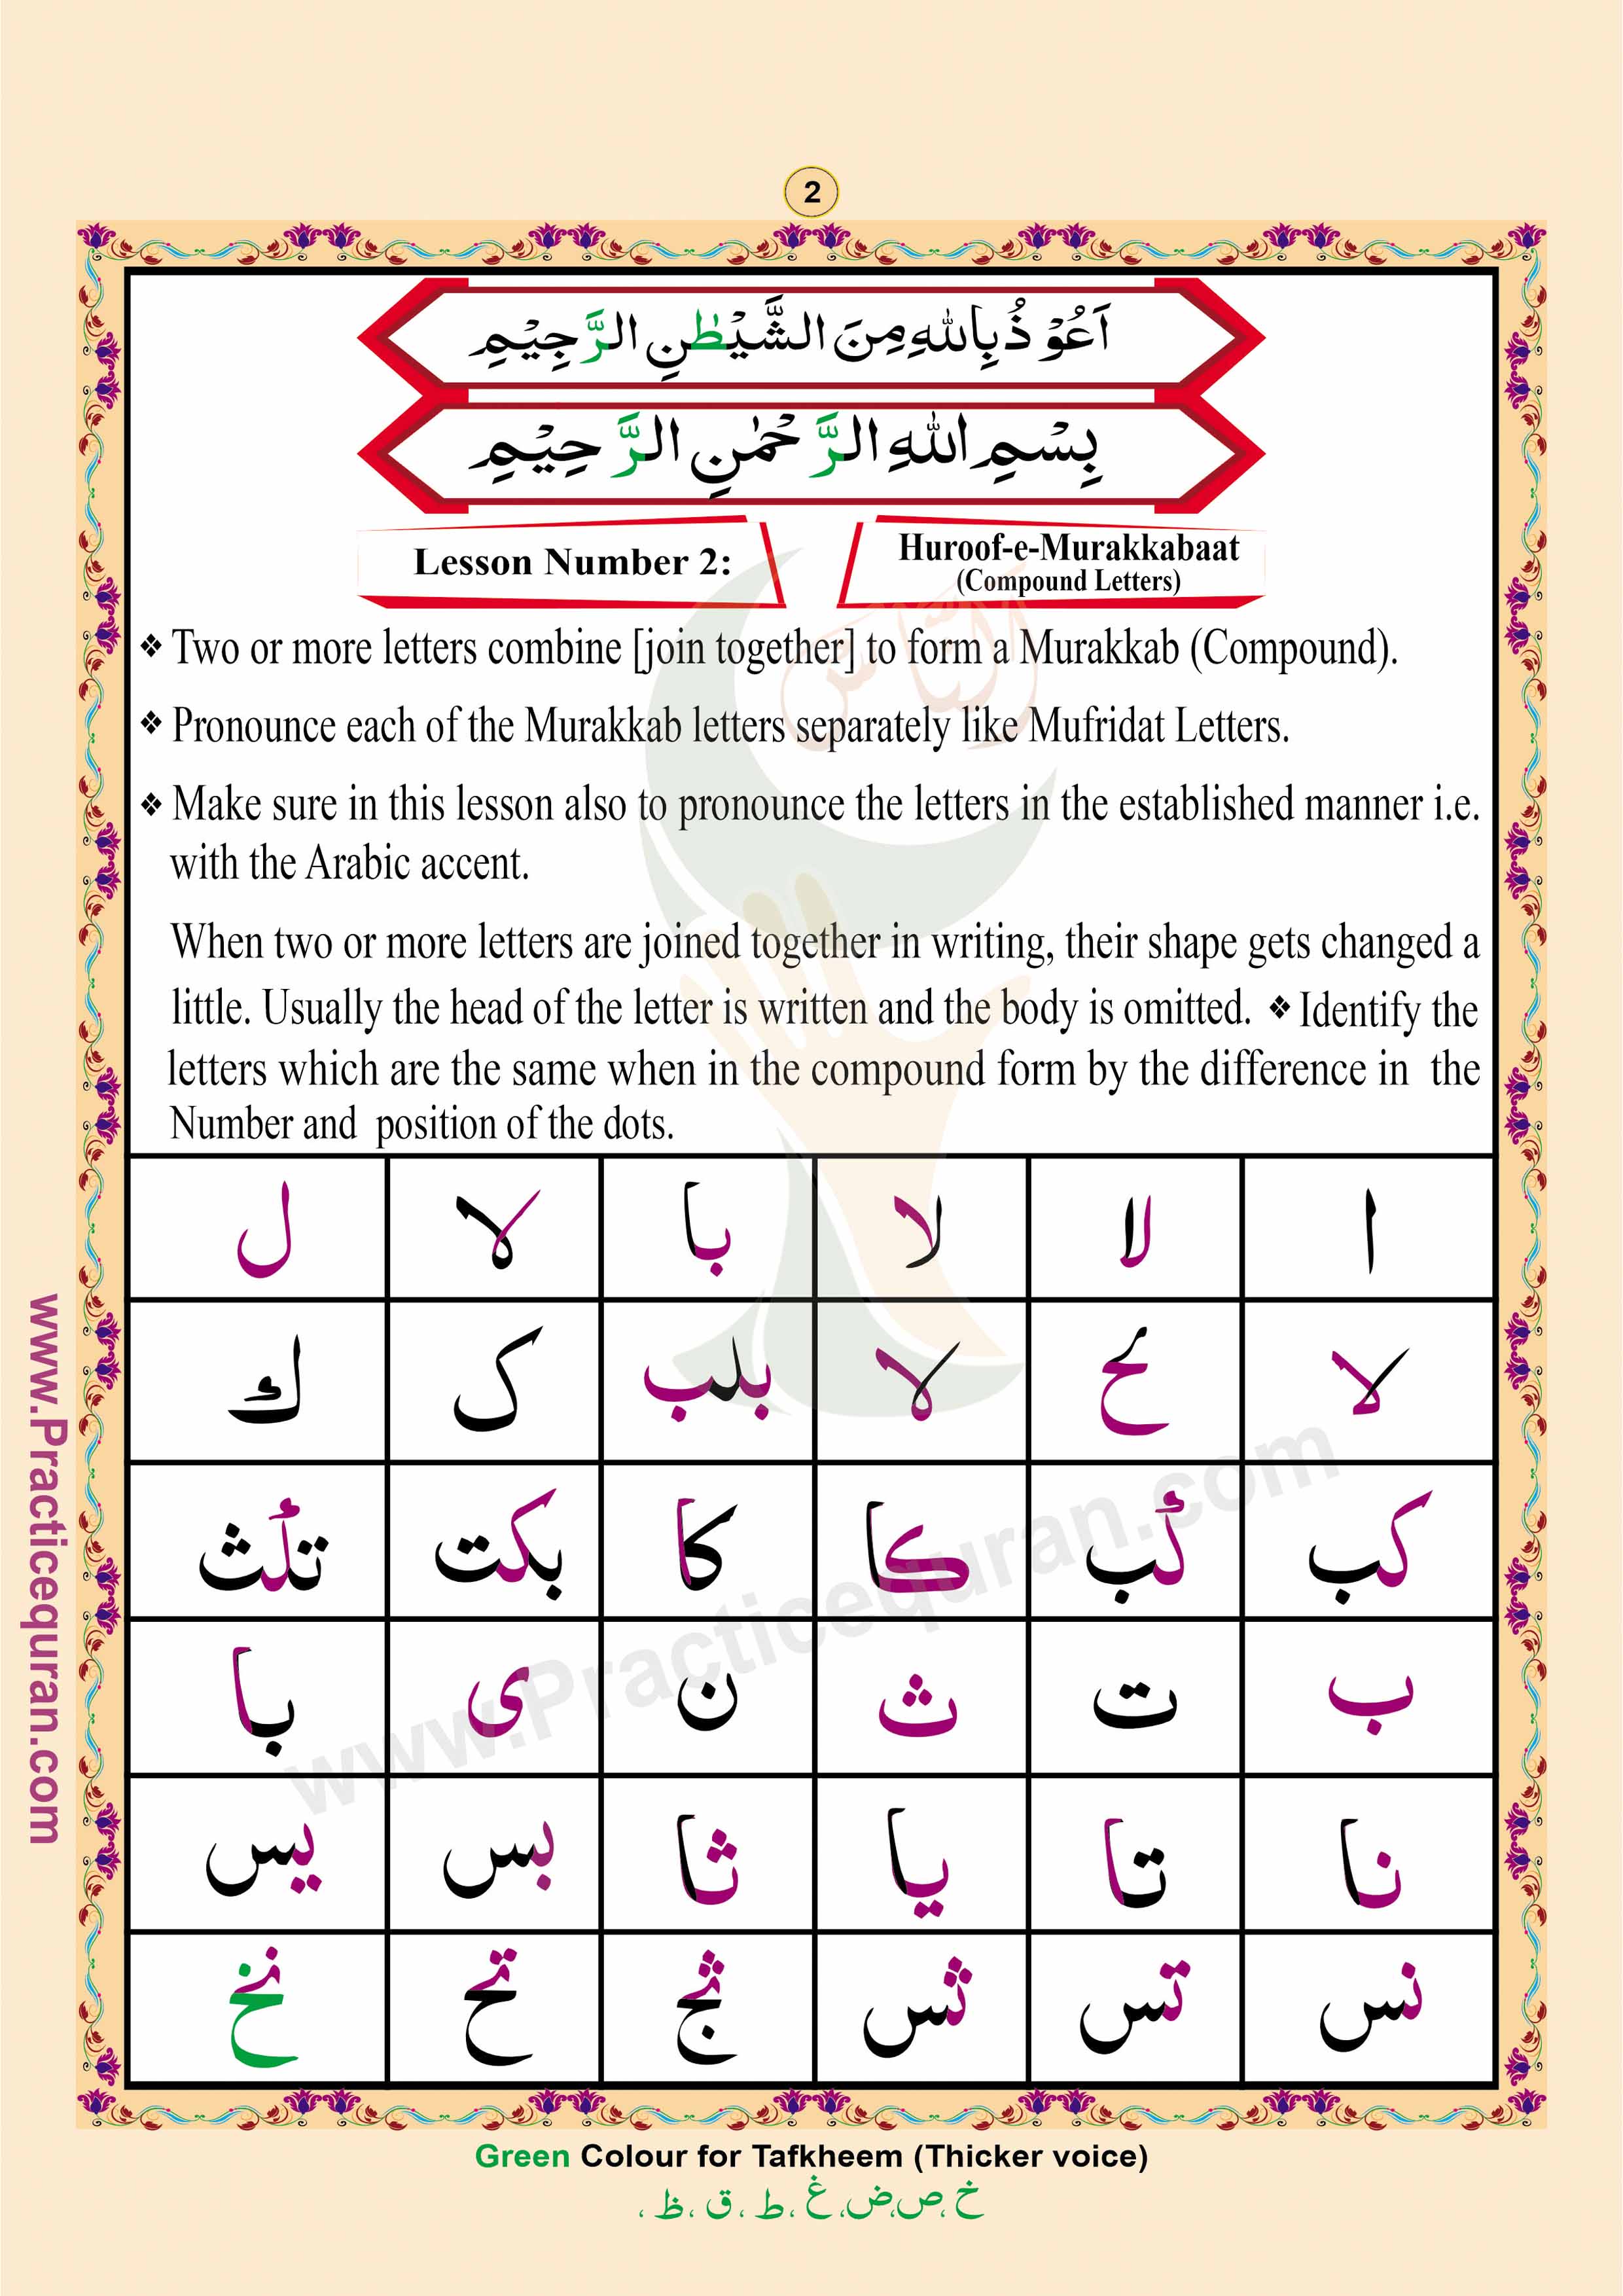 Read English Noorani Qaidah Page No 2, Practice Quran